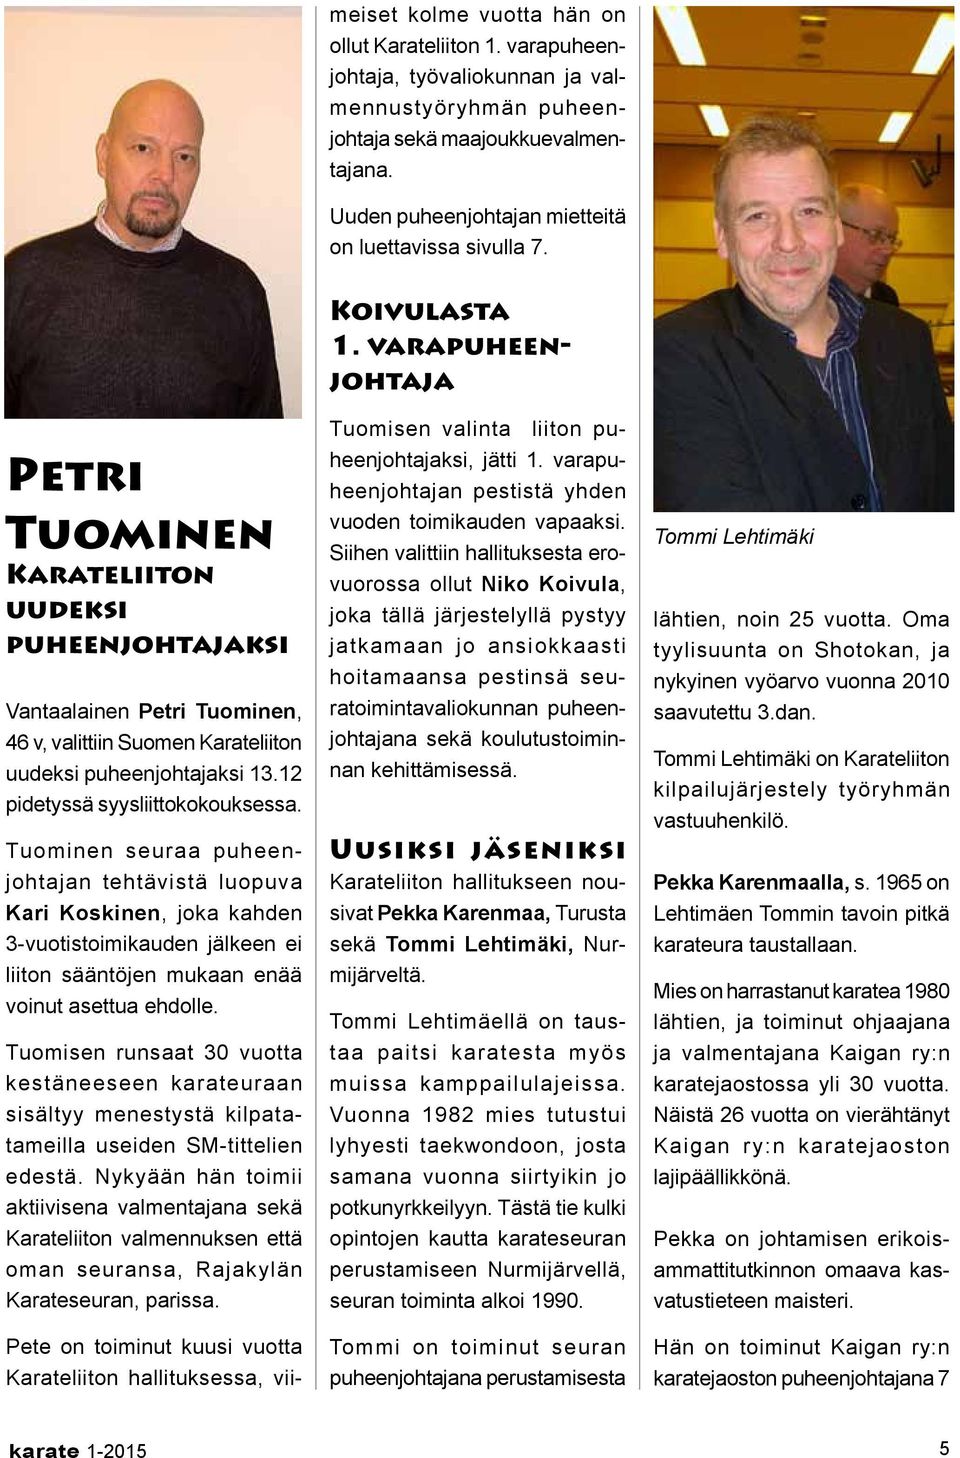 Petri Tuominen Karateliiton uudeksi puheenjohtajaksi Vantaalainen Petri Tuominen, 46 v, valittiin Suomen Karateliiton uudeksi puheenjohtajaksi 13.12 pidetyssä syysliittokokouksessa.